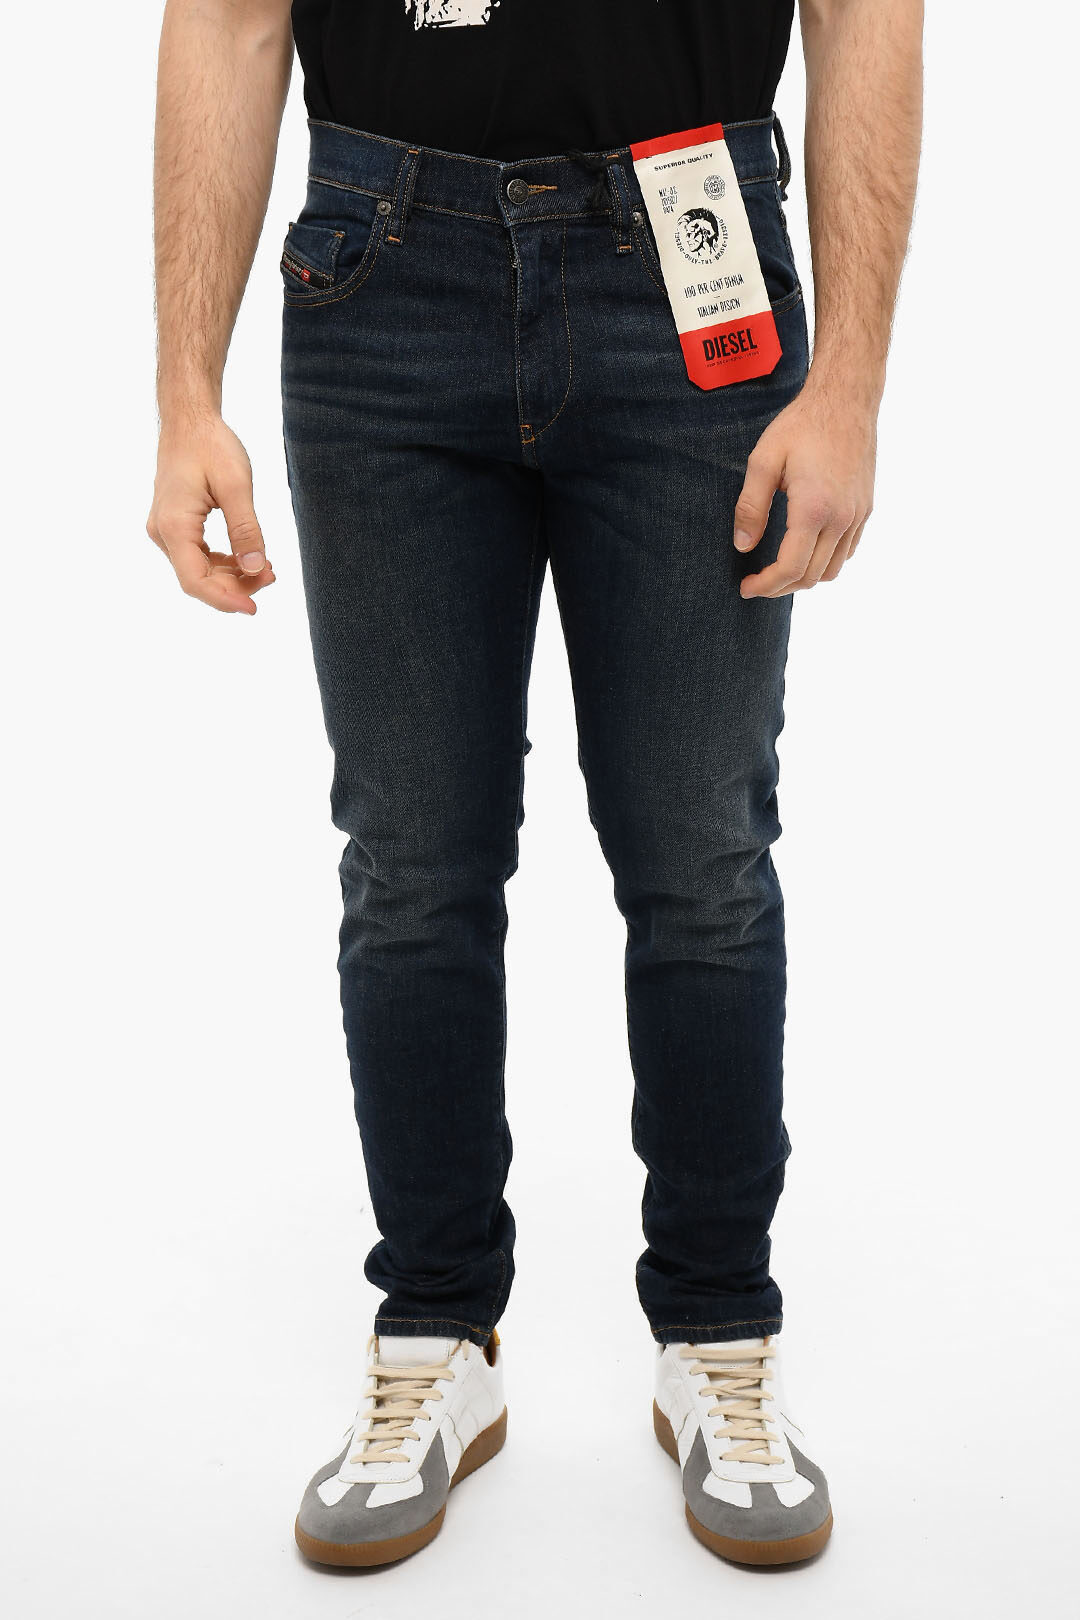 Diesel 15cm slim fit D-STRUKT jeans men - Glamood Outlet